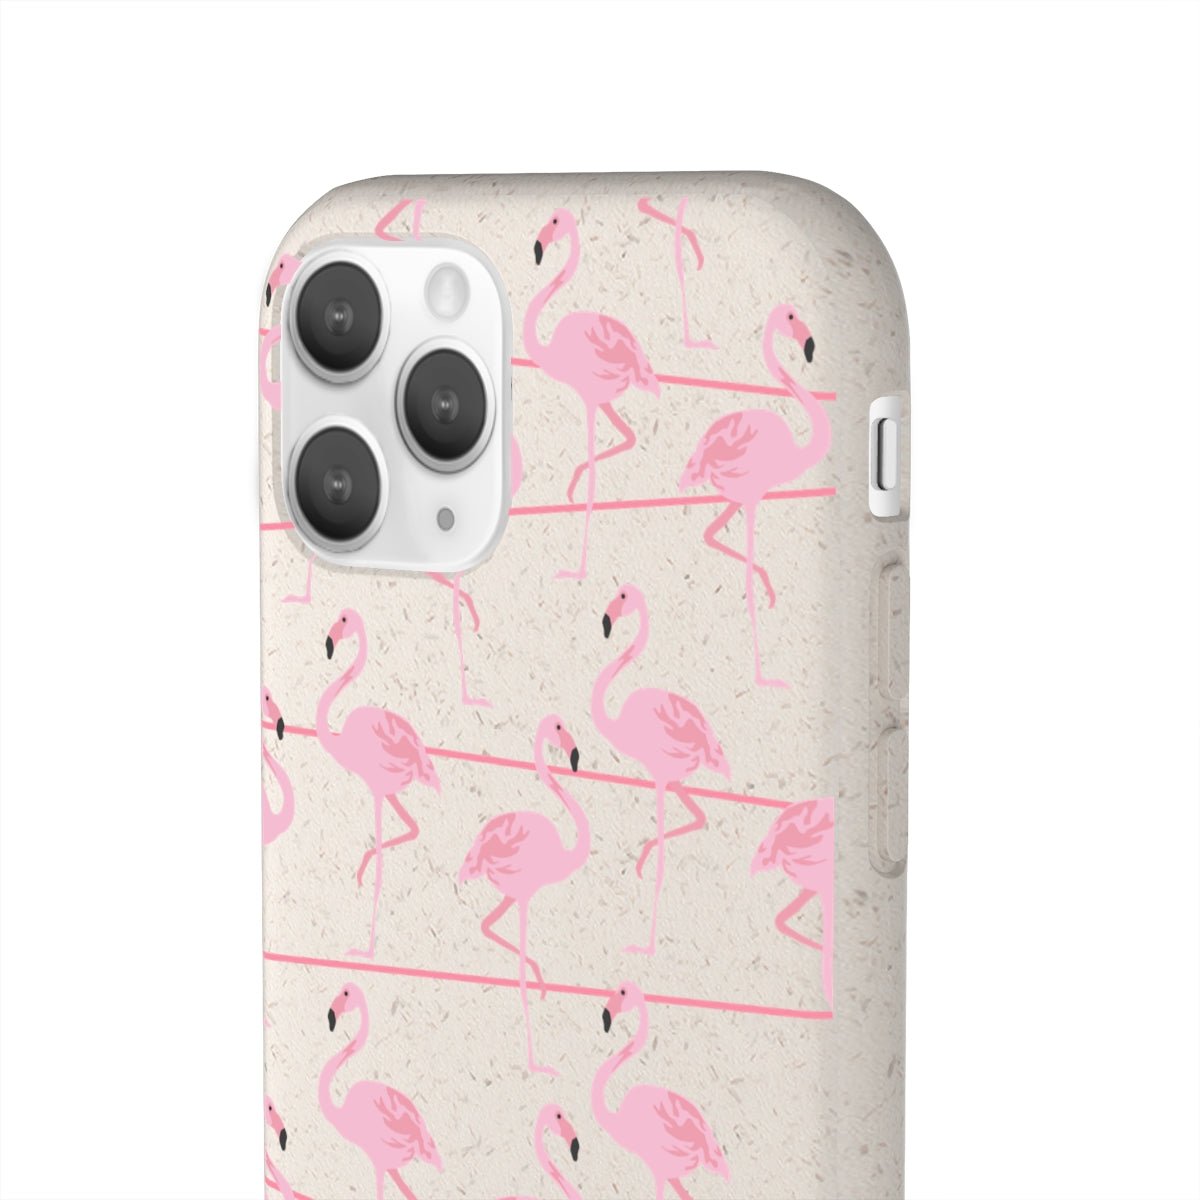 Bio Cases - Classy Cases - Cute Durable Phone Cases